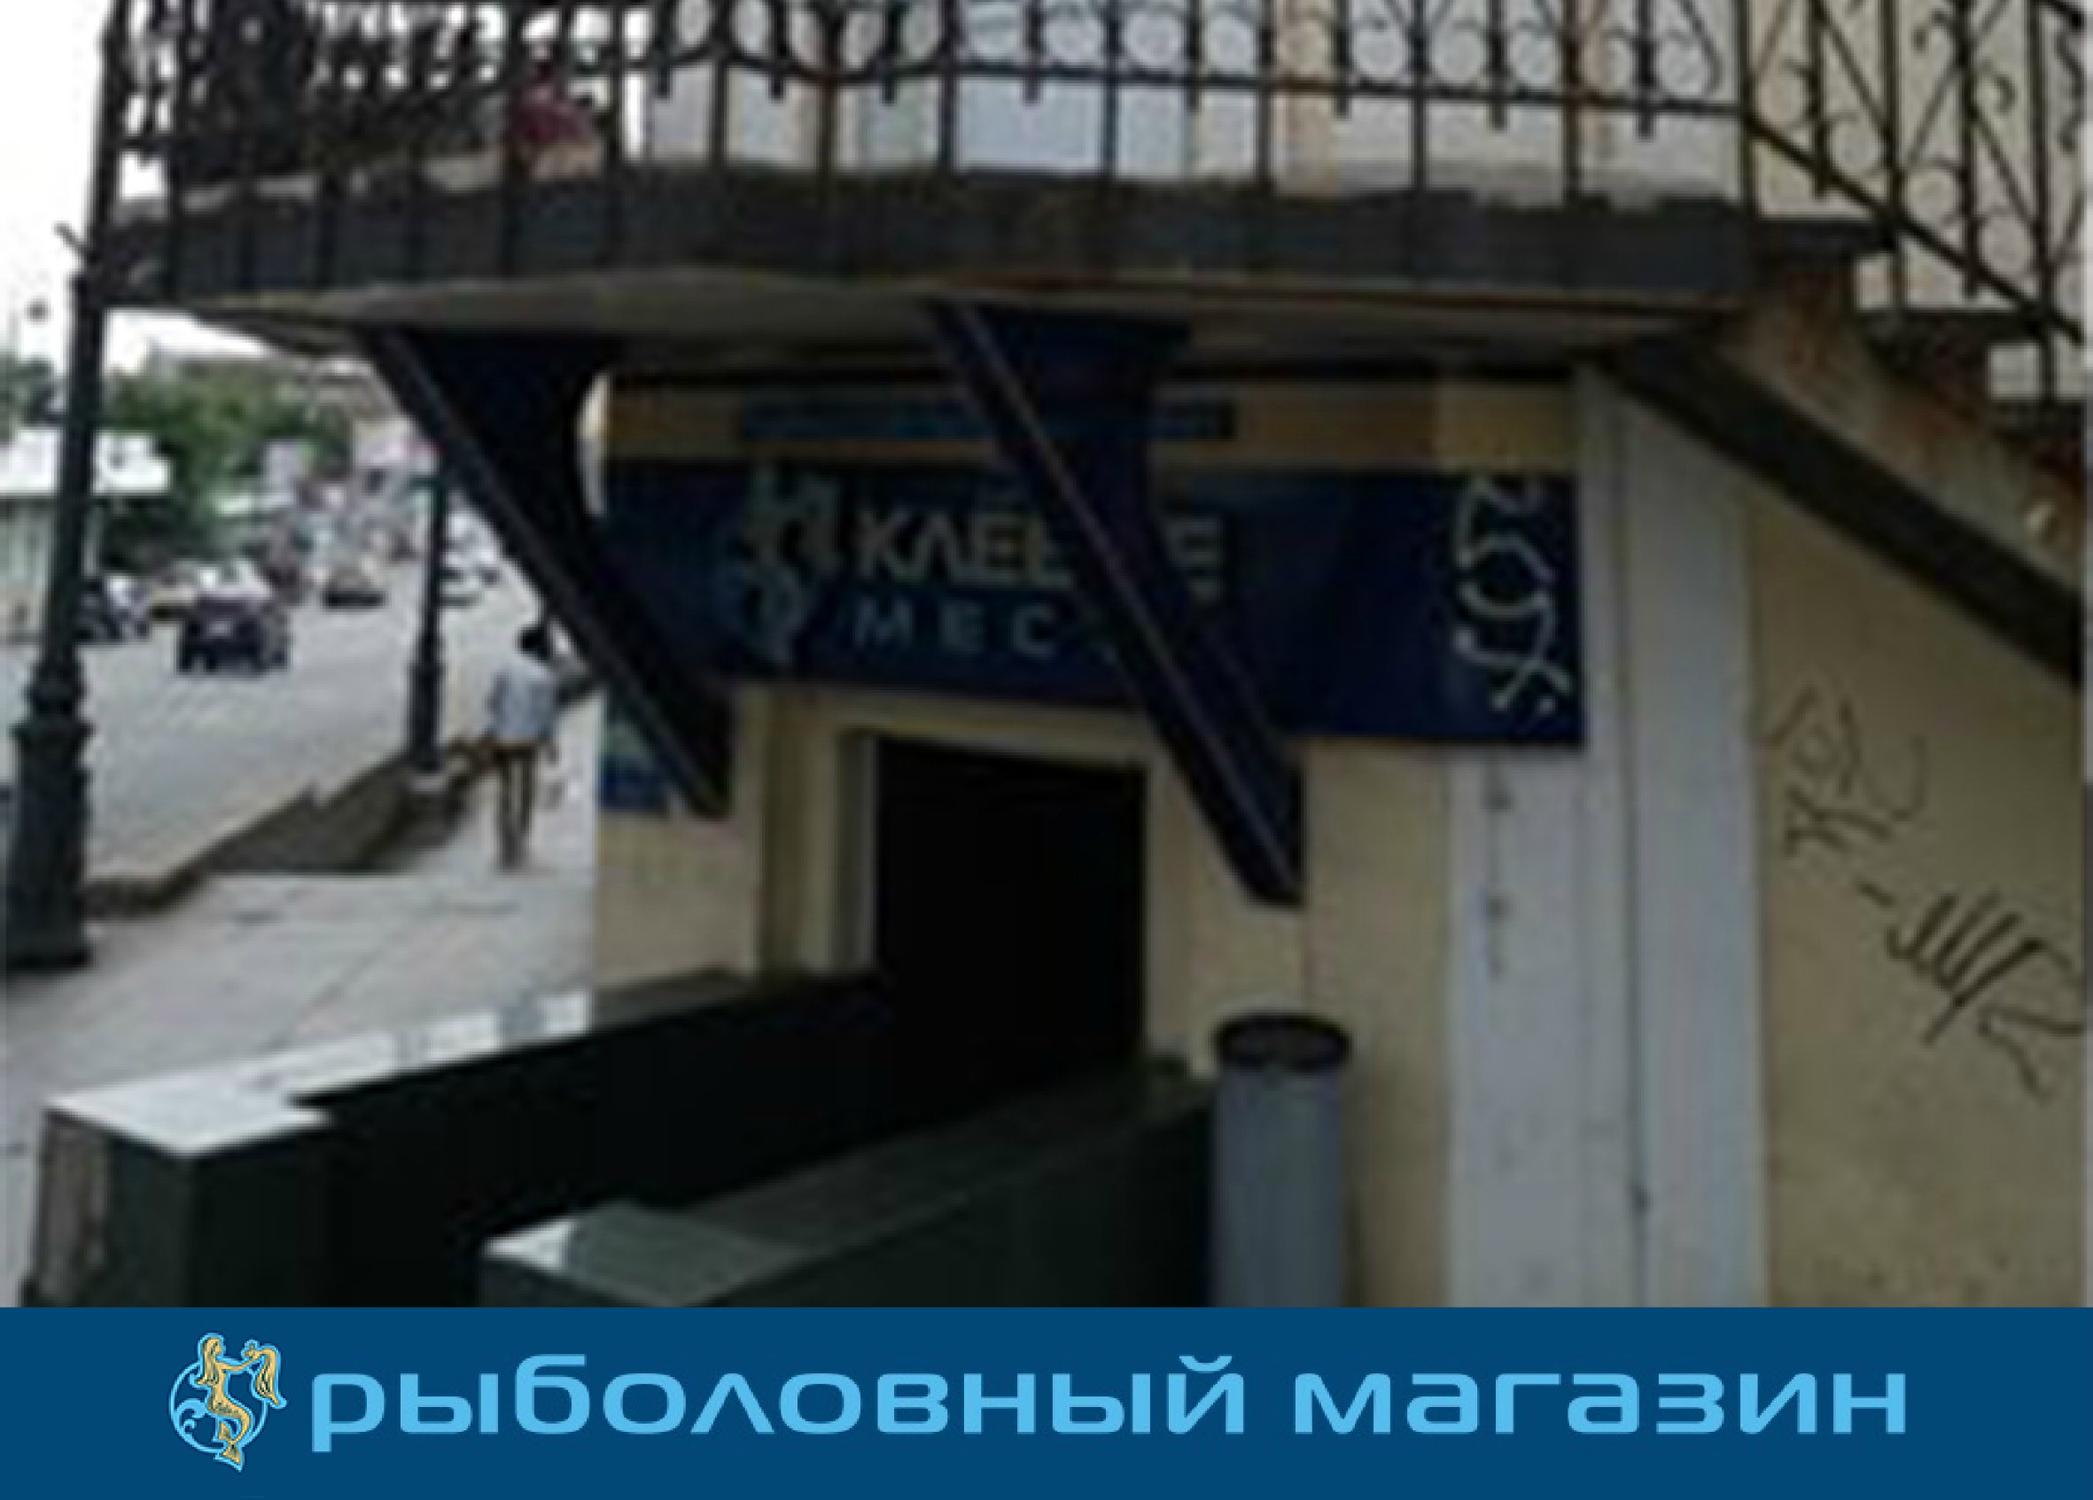 Первый Рыболовный Владивосток Интернет Магазин Каталог Товаров